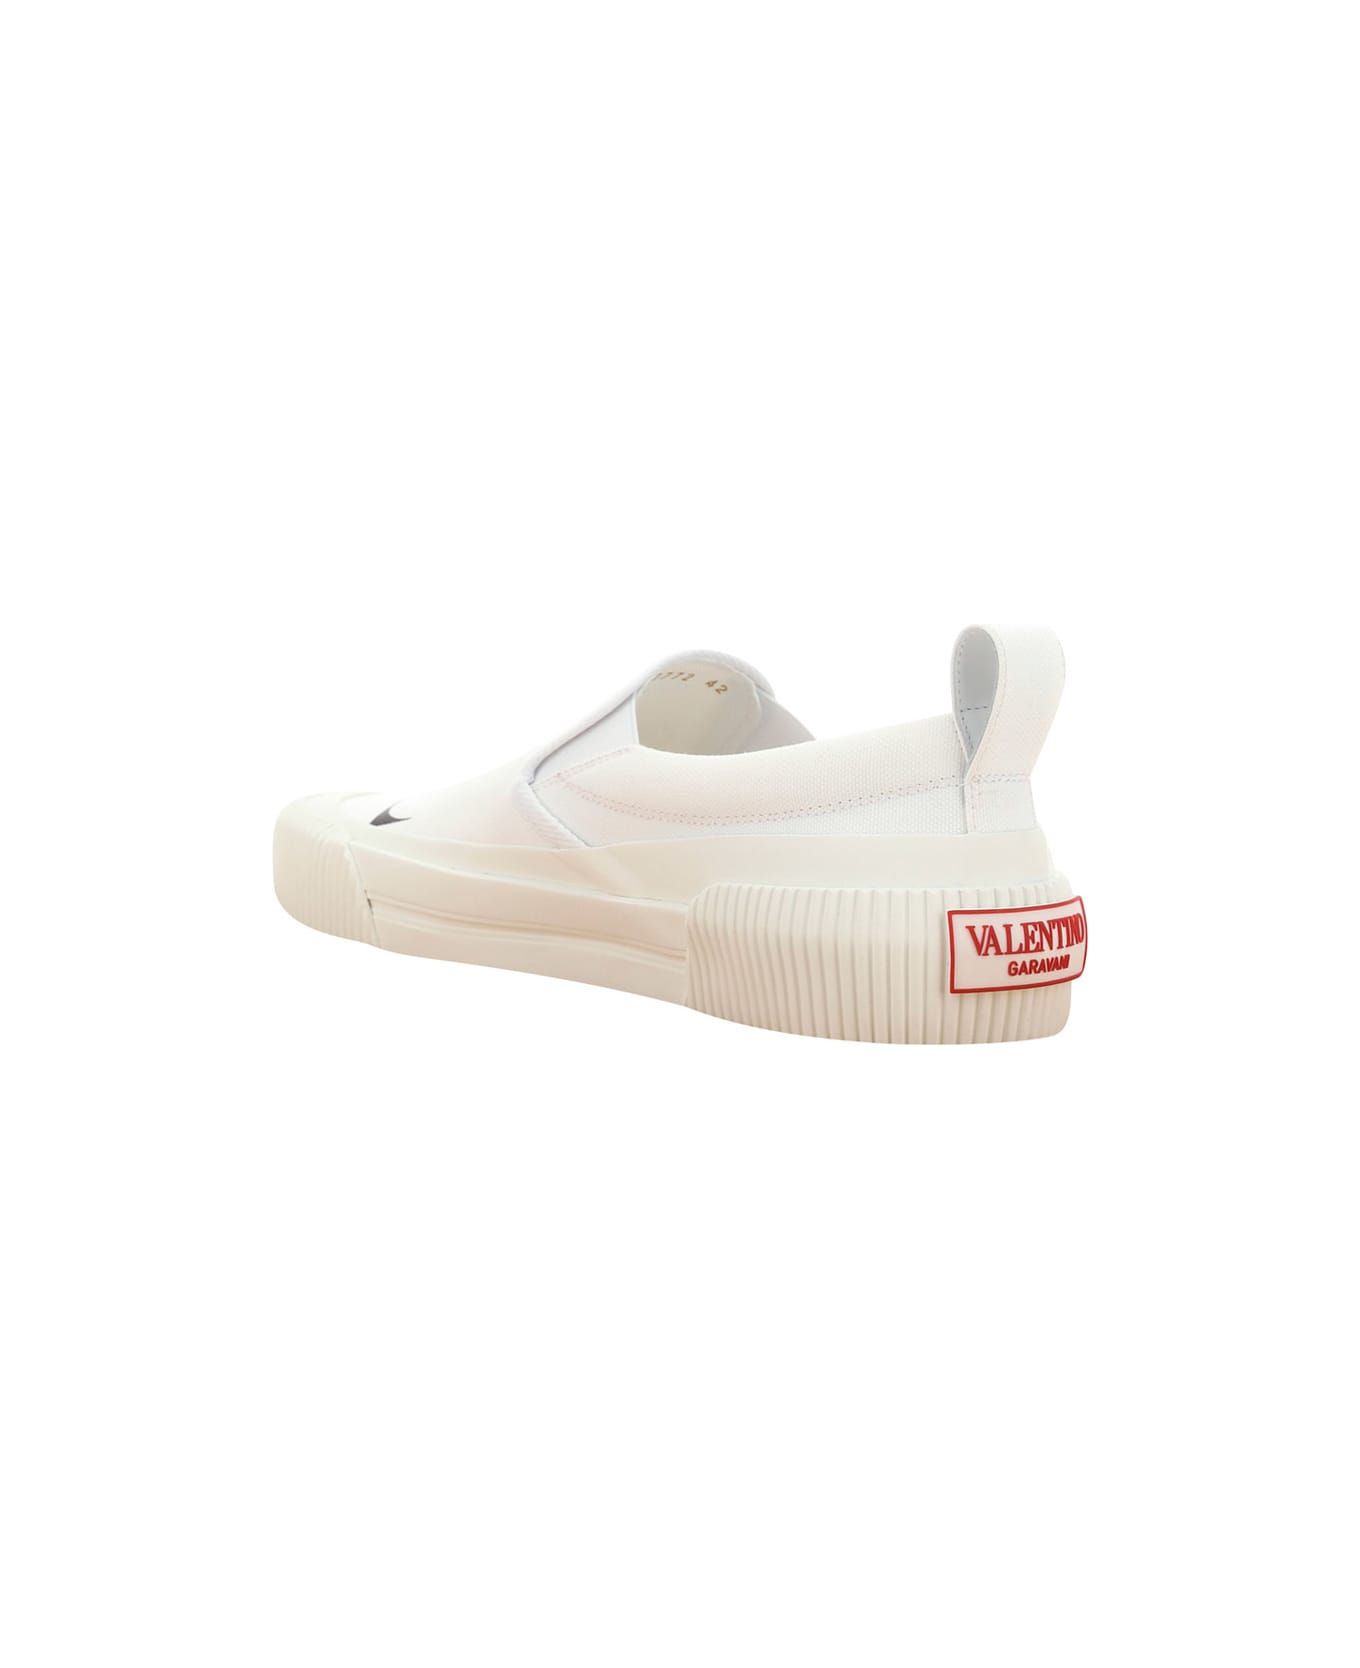 Valentino Garavani Vltn Slip-on Sneakers - White スニーカー